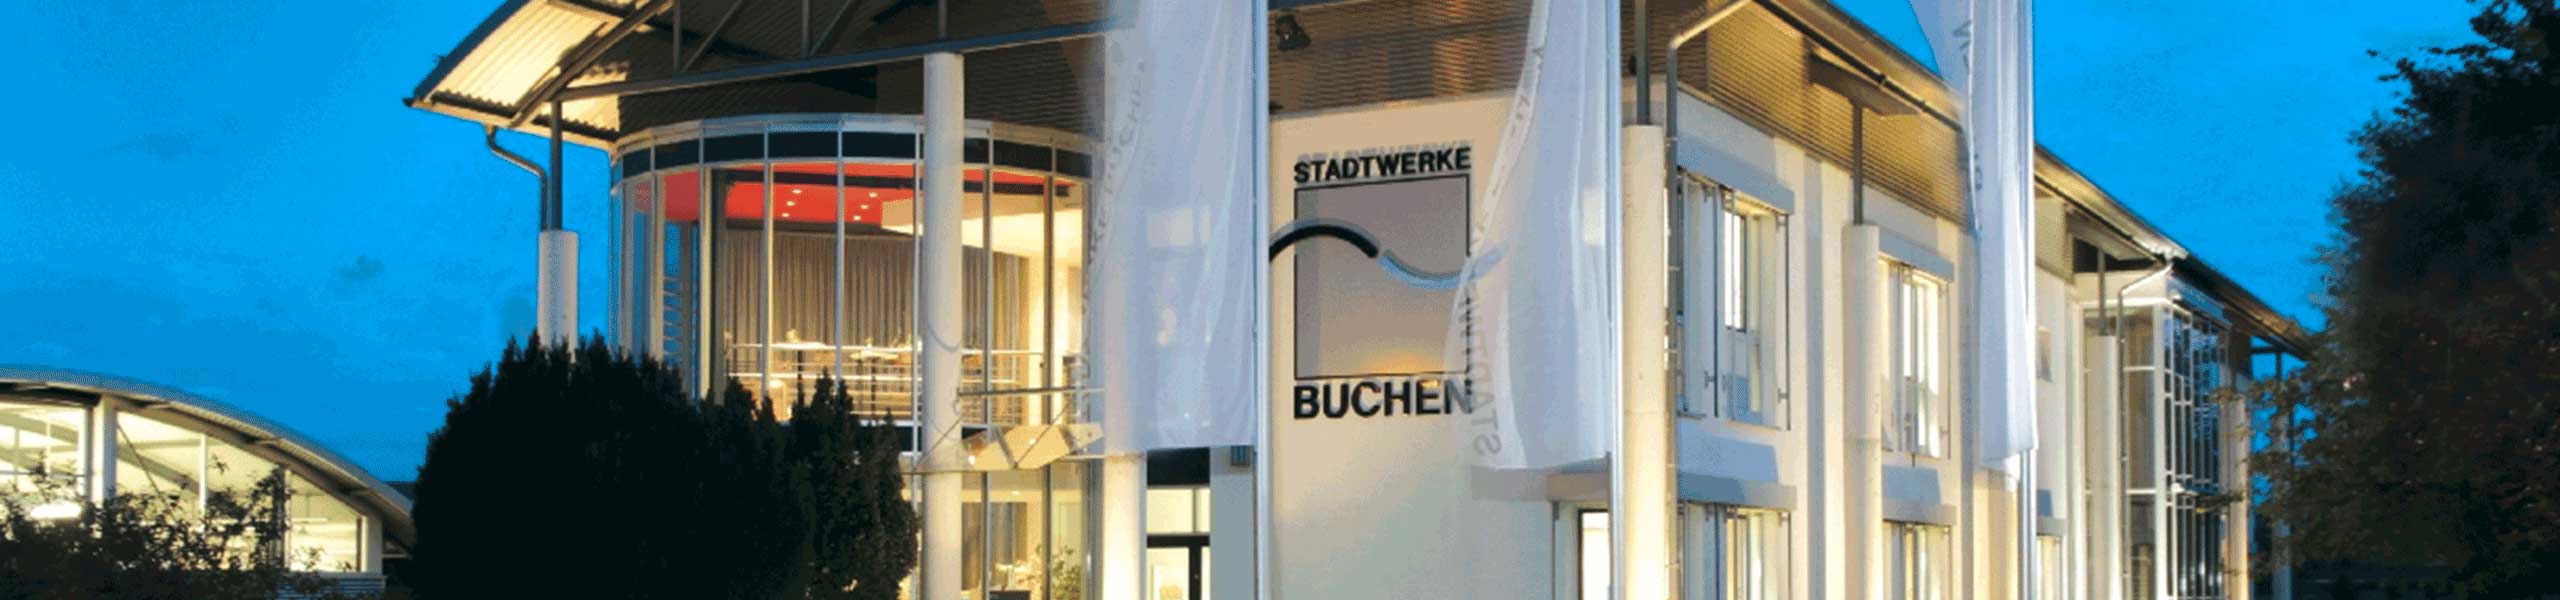 Stadtwerke Buchen GmbH & Co KG - Energie & Dienstleistungen Buchen